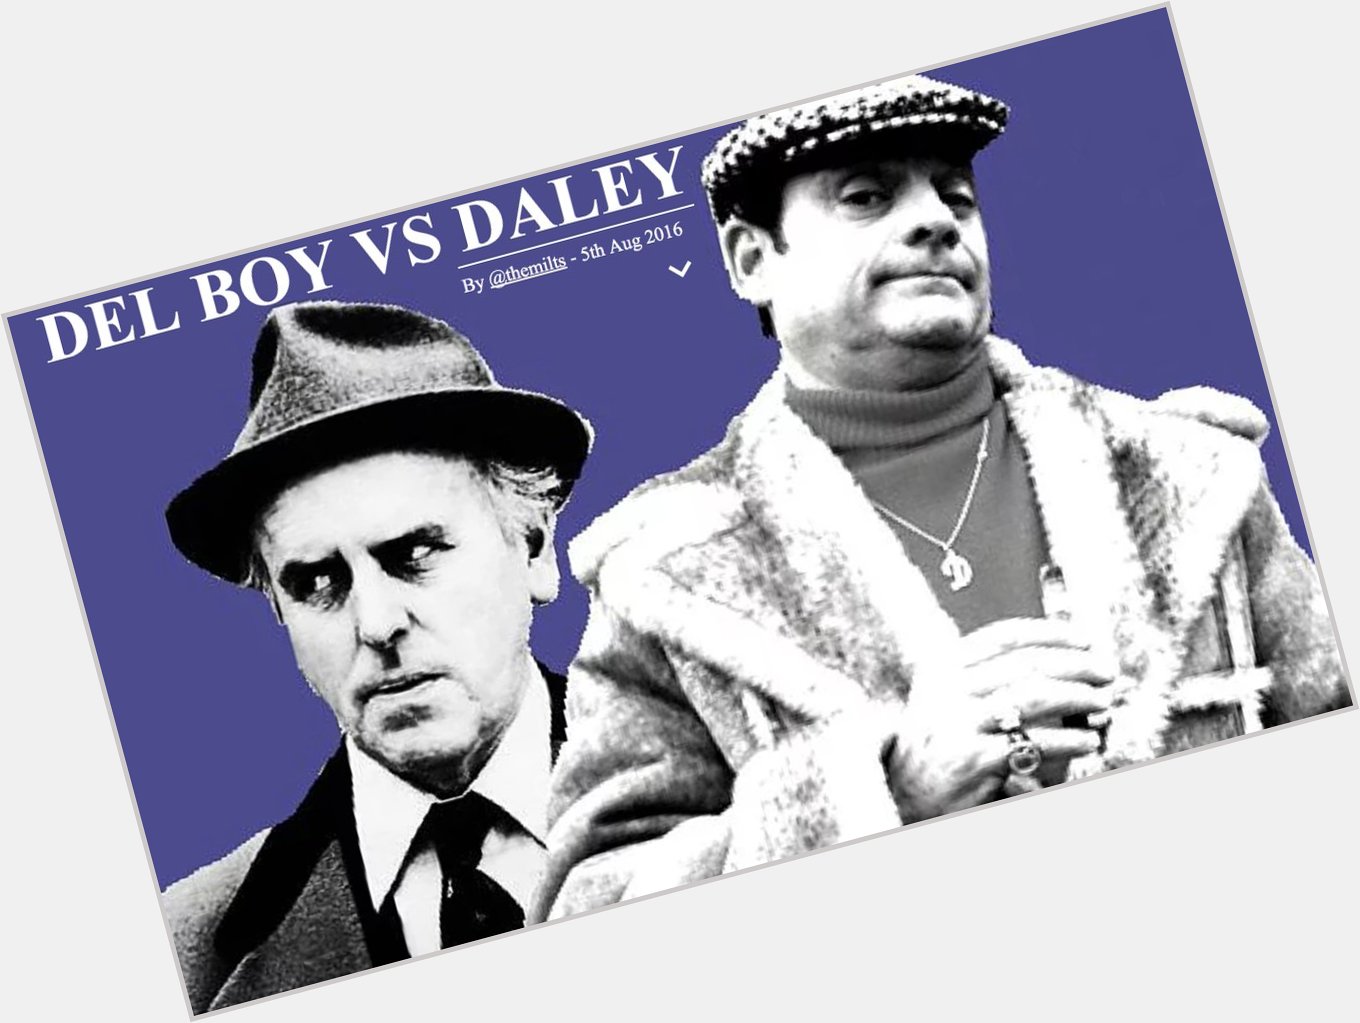 Happy Birthday David Jason (77) - DEL-BOY vs DALEY by 